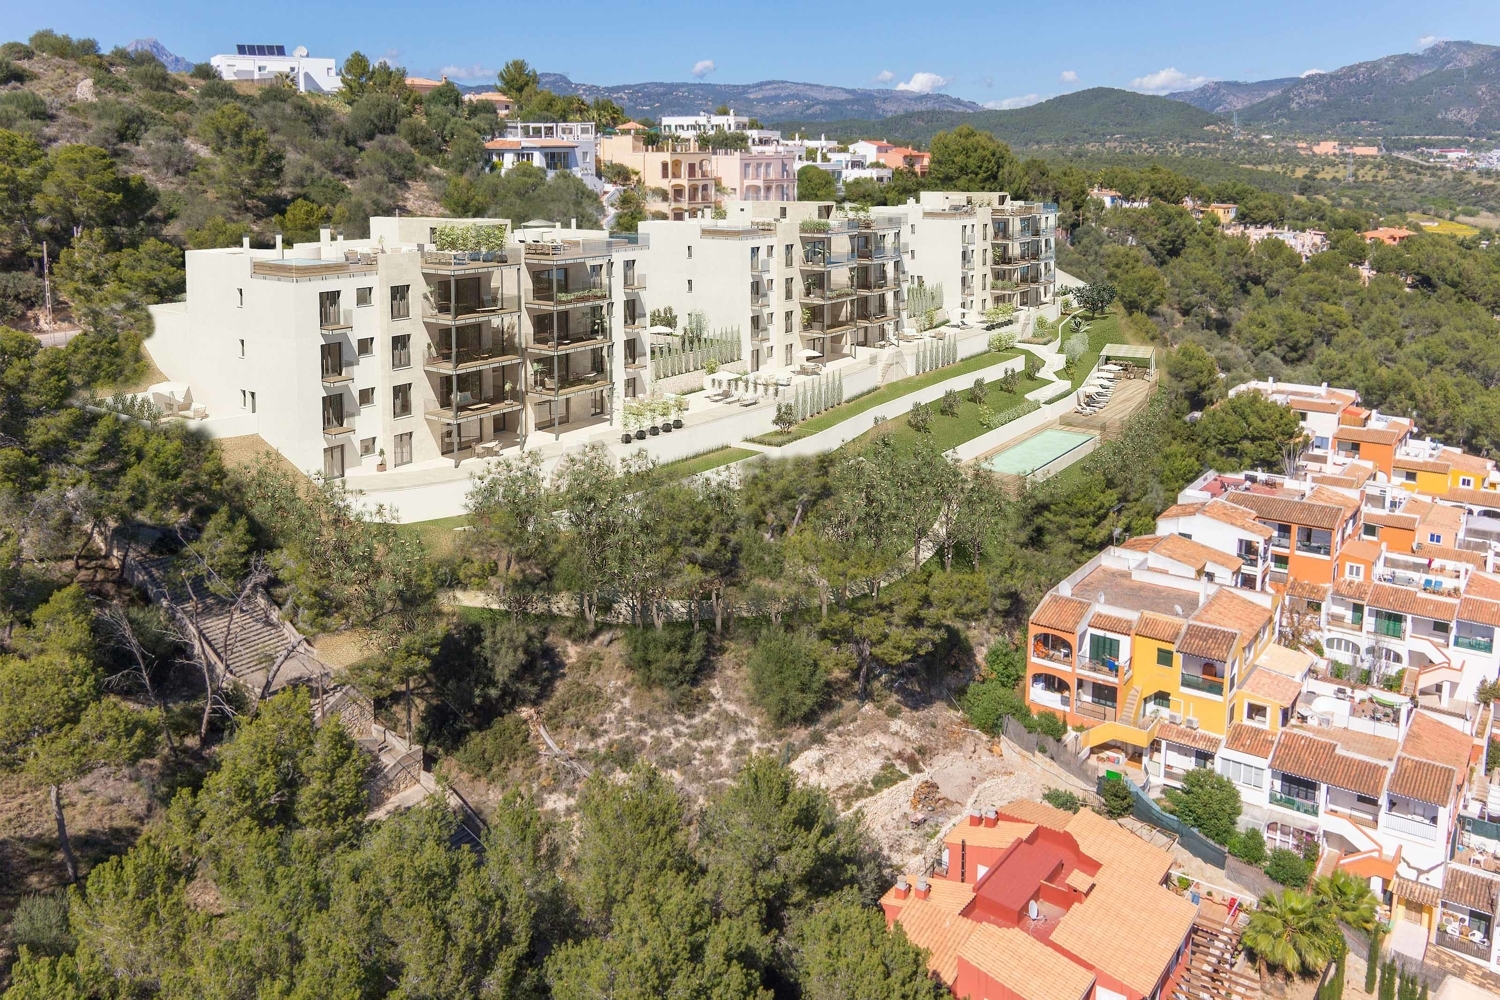 Ático de nueva construcción con 4 dormitorios, azotea privada y piscina en Santa Ponça